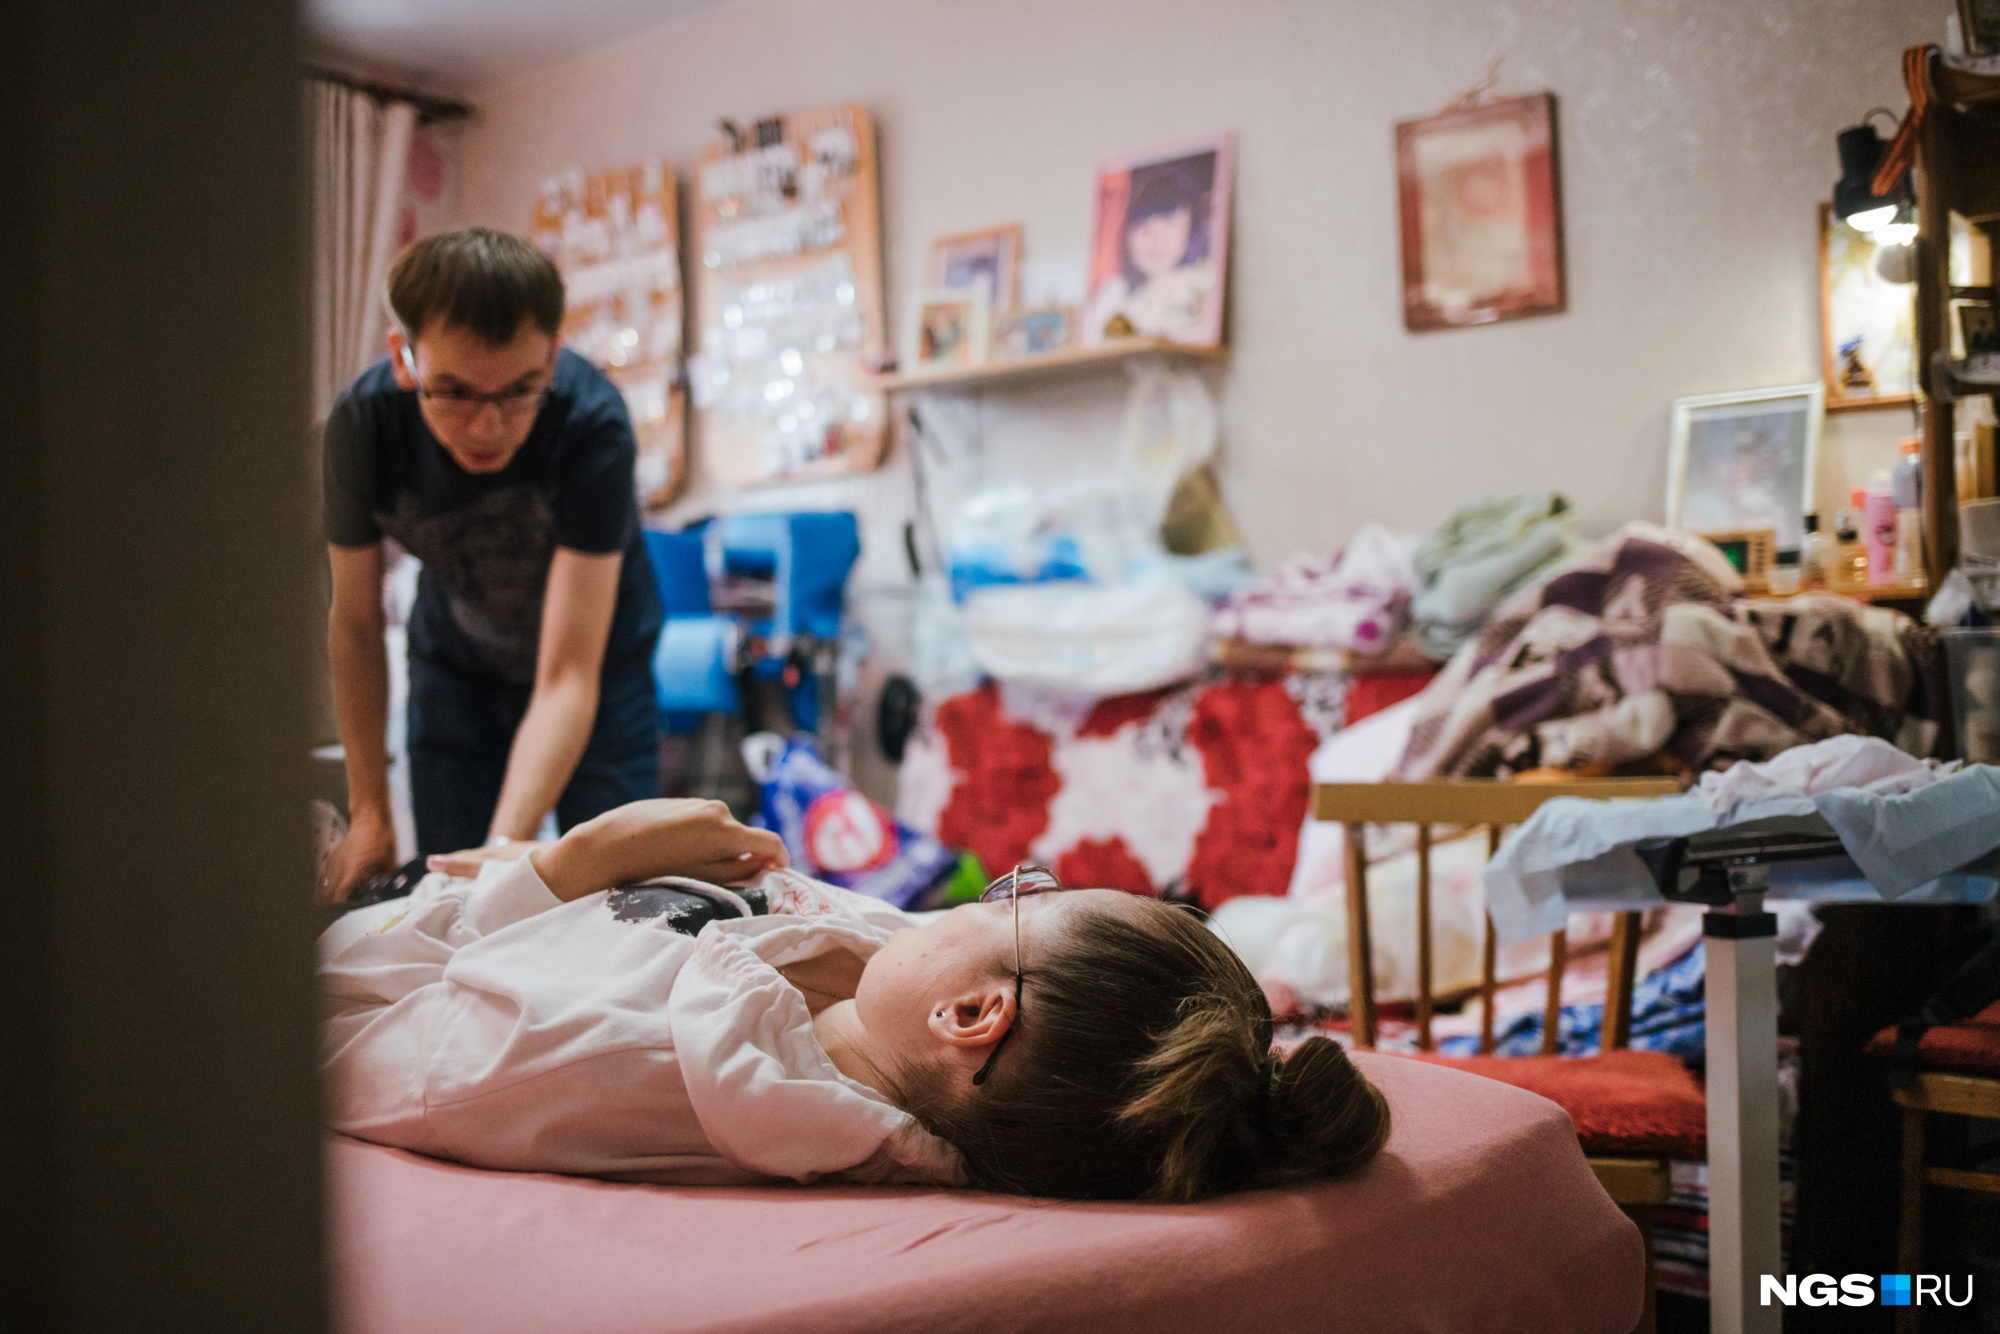 В день на реабилитацию нужно около 3–4 тысяч рублей и даже больше